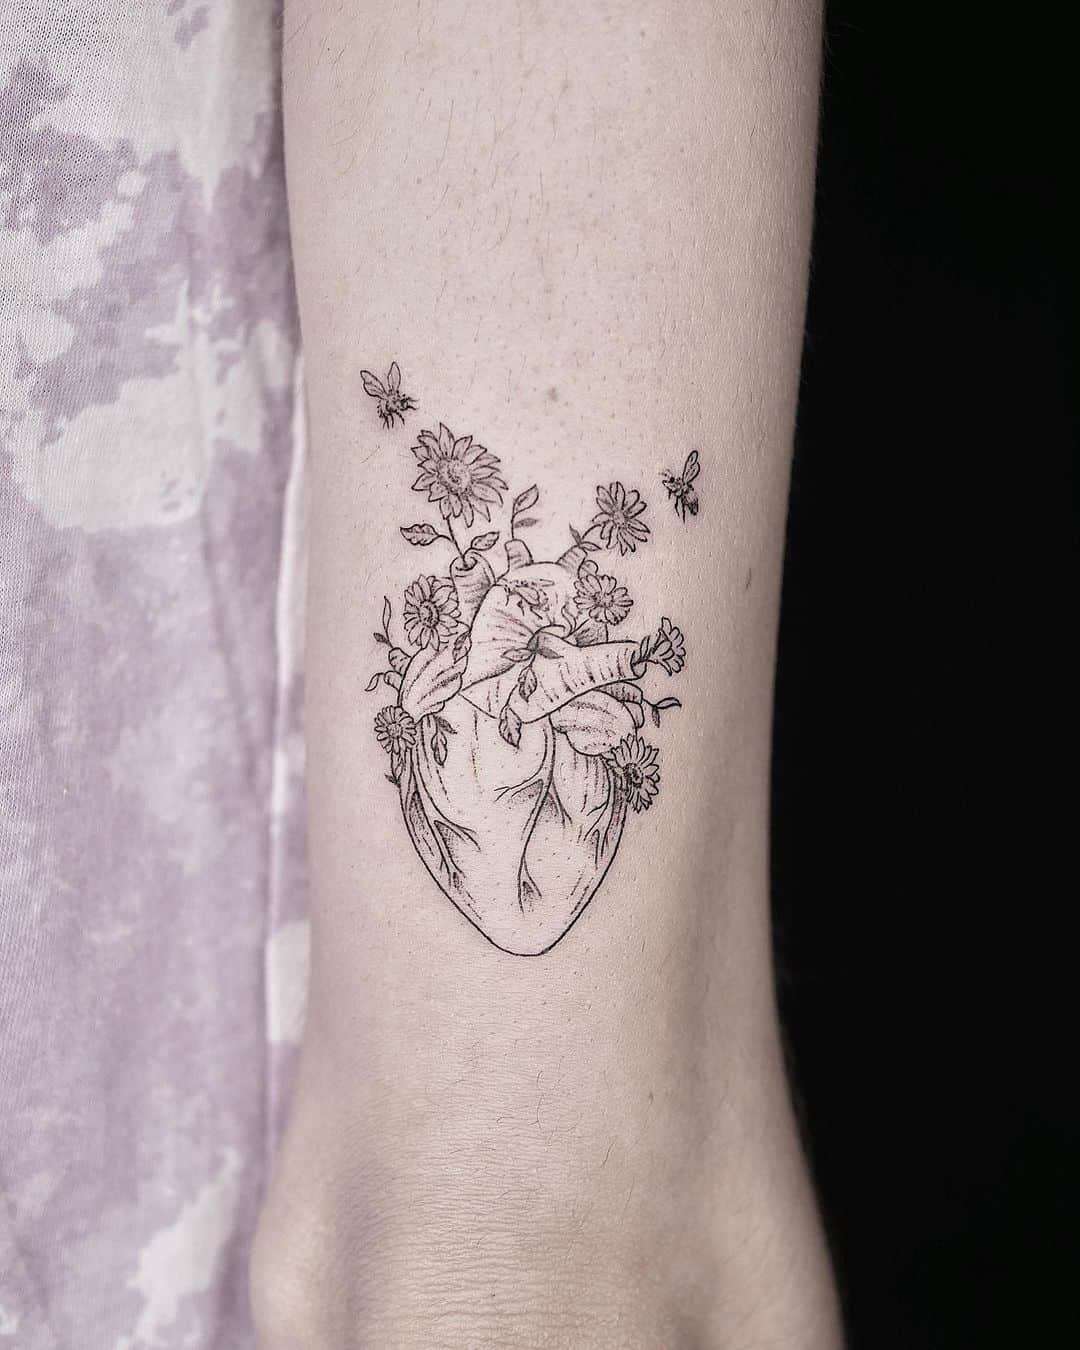 pinterest style heart tattoo design